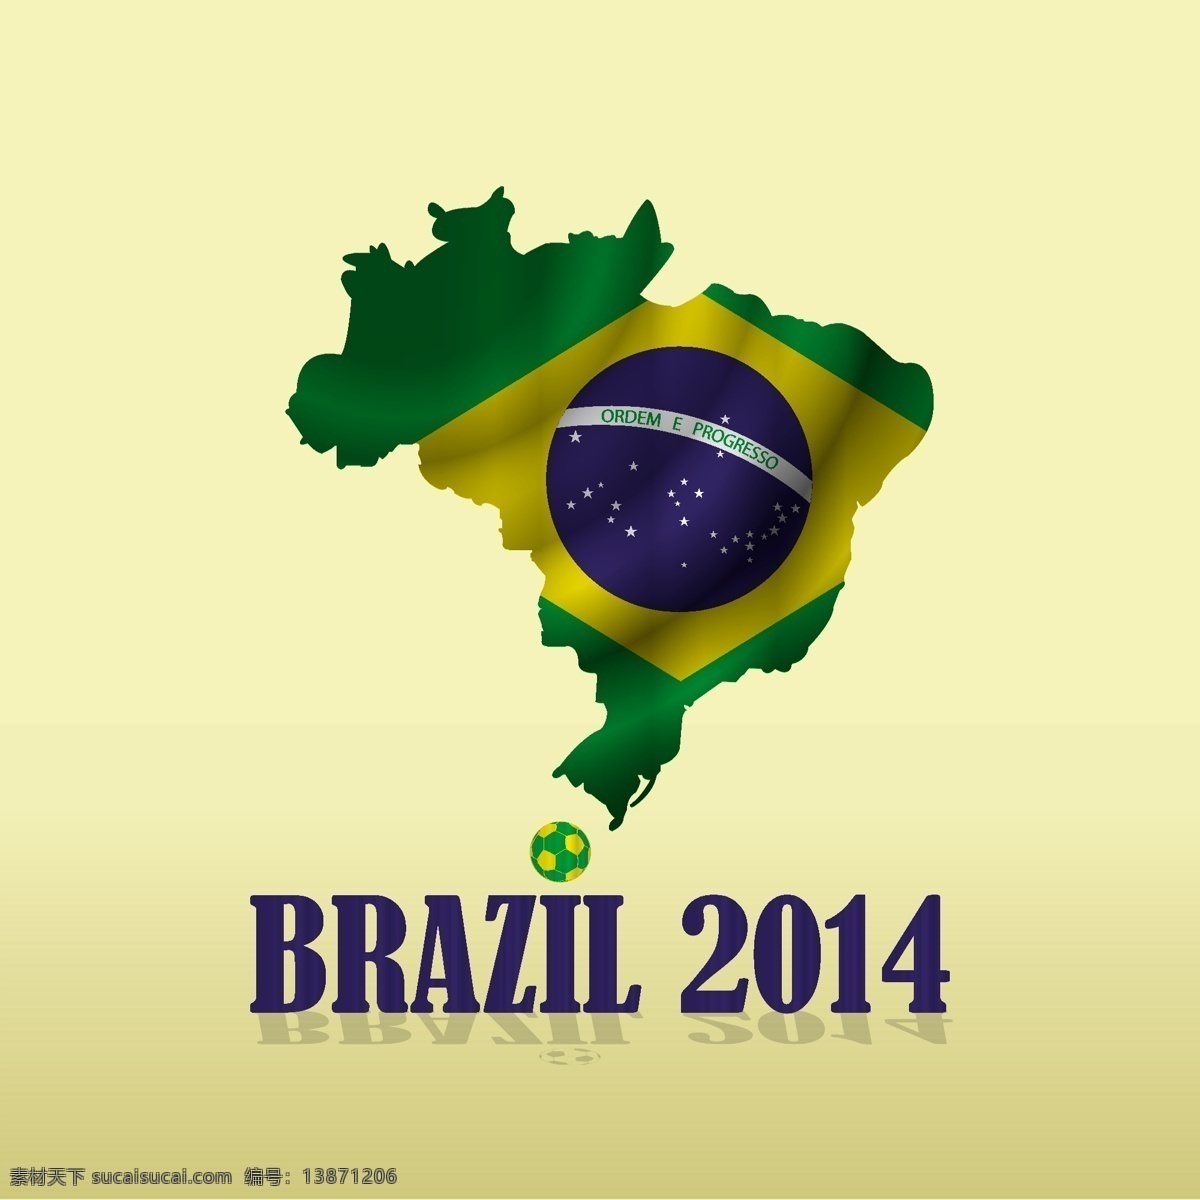 巴西 地图 国旗 模板下载 巴西地图 巴西国旗 足球 世界杯 足球赛事 体育运动 生活百科 矢量素材 黄色